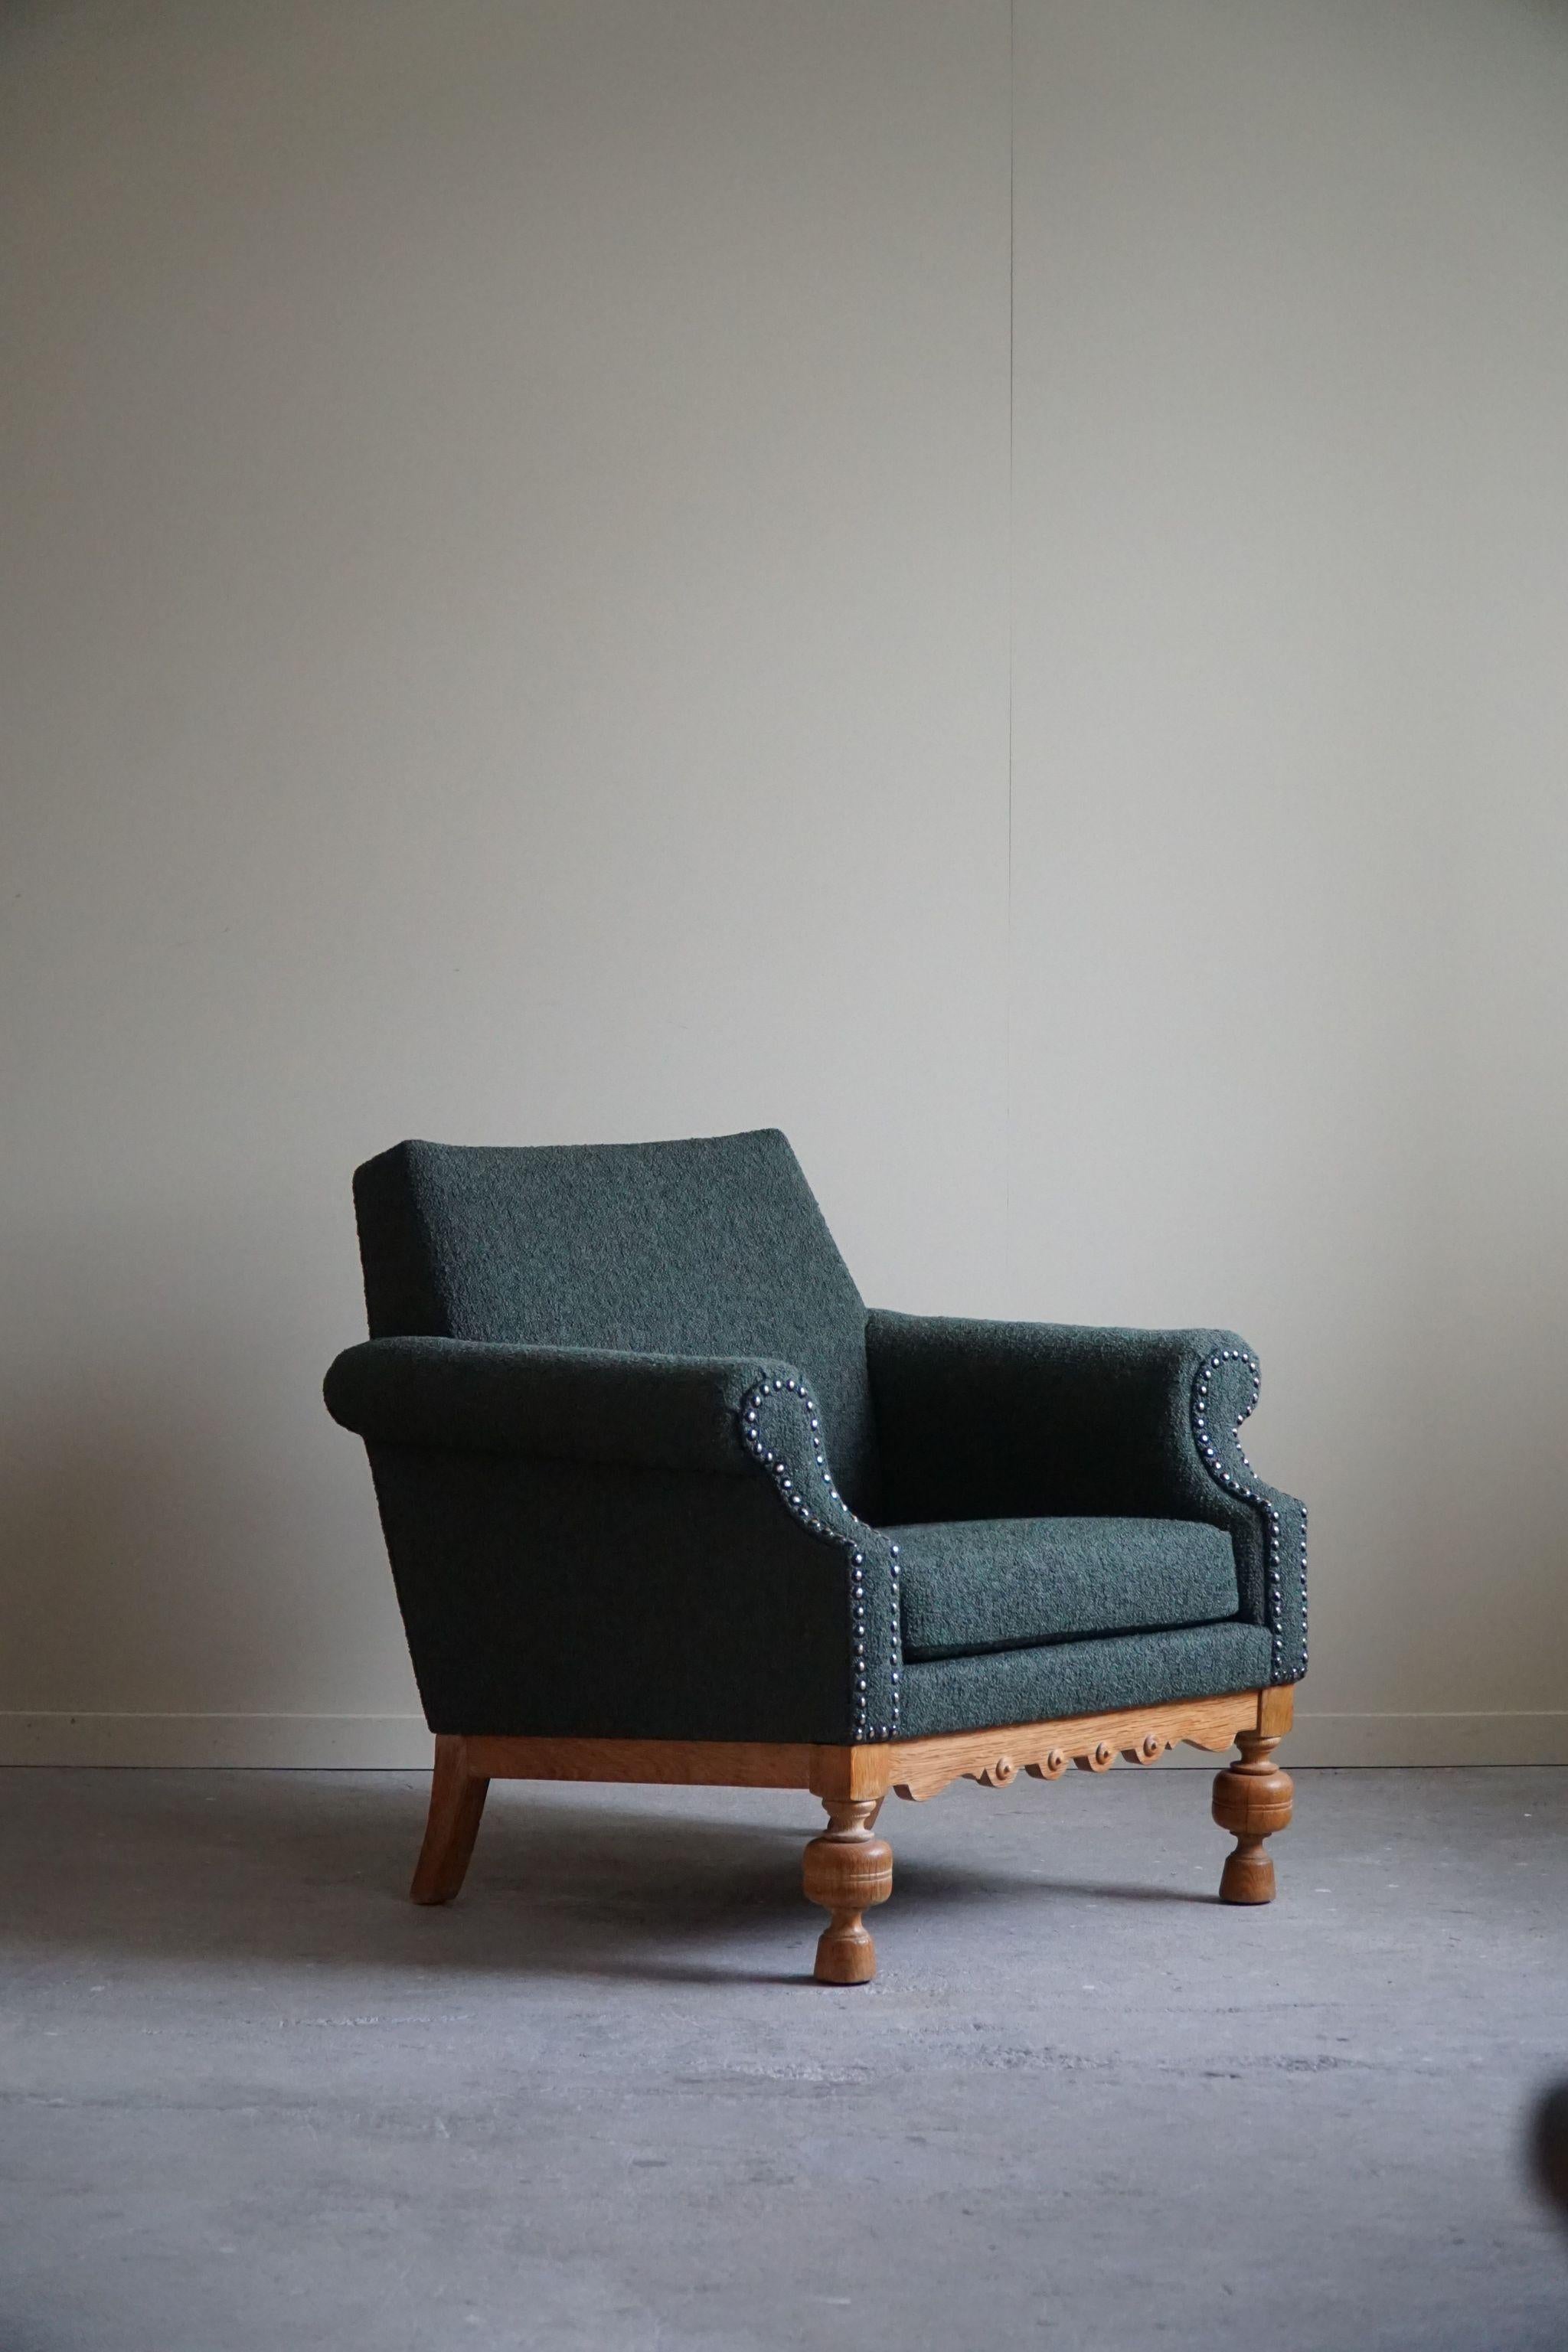 Lounge Chair in Oak & Green Bouclé, Danish Mid-Century Modern, 1950s For Sale 10